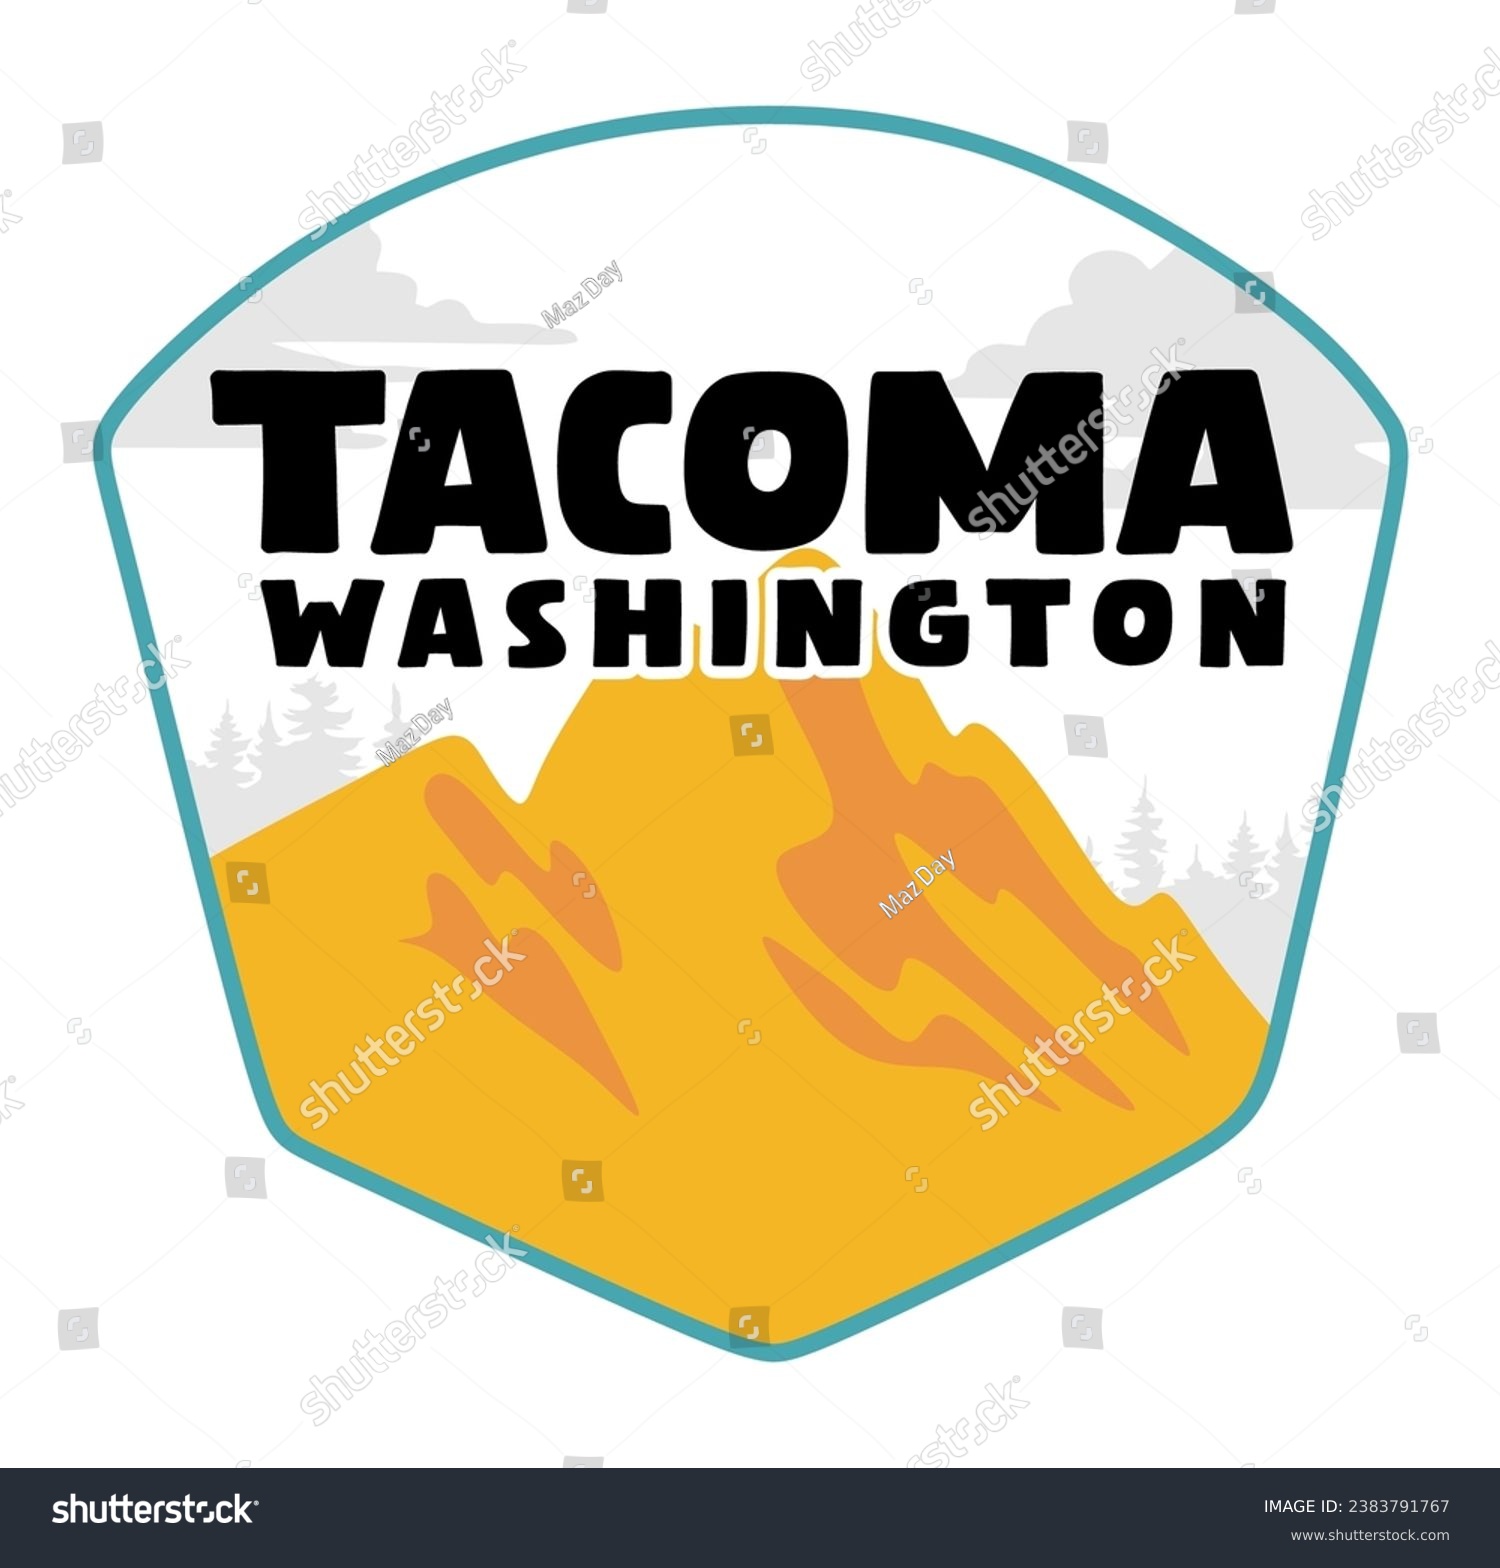 SVG of Tacoma Washington United States of America svg